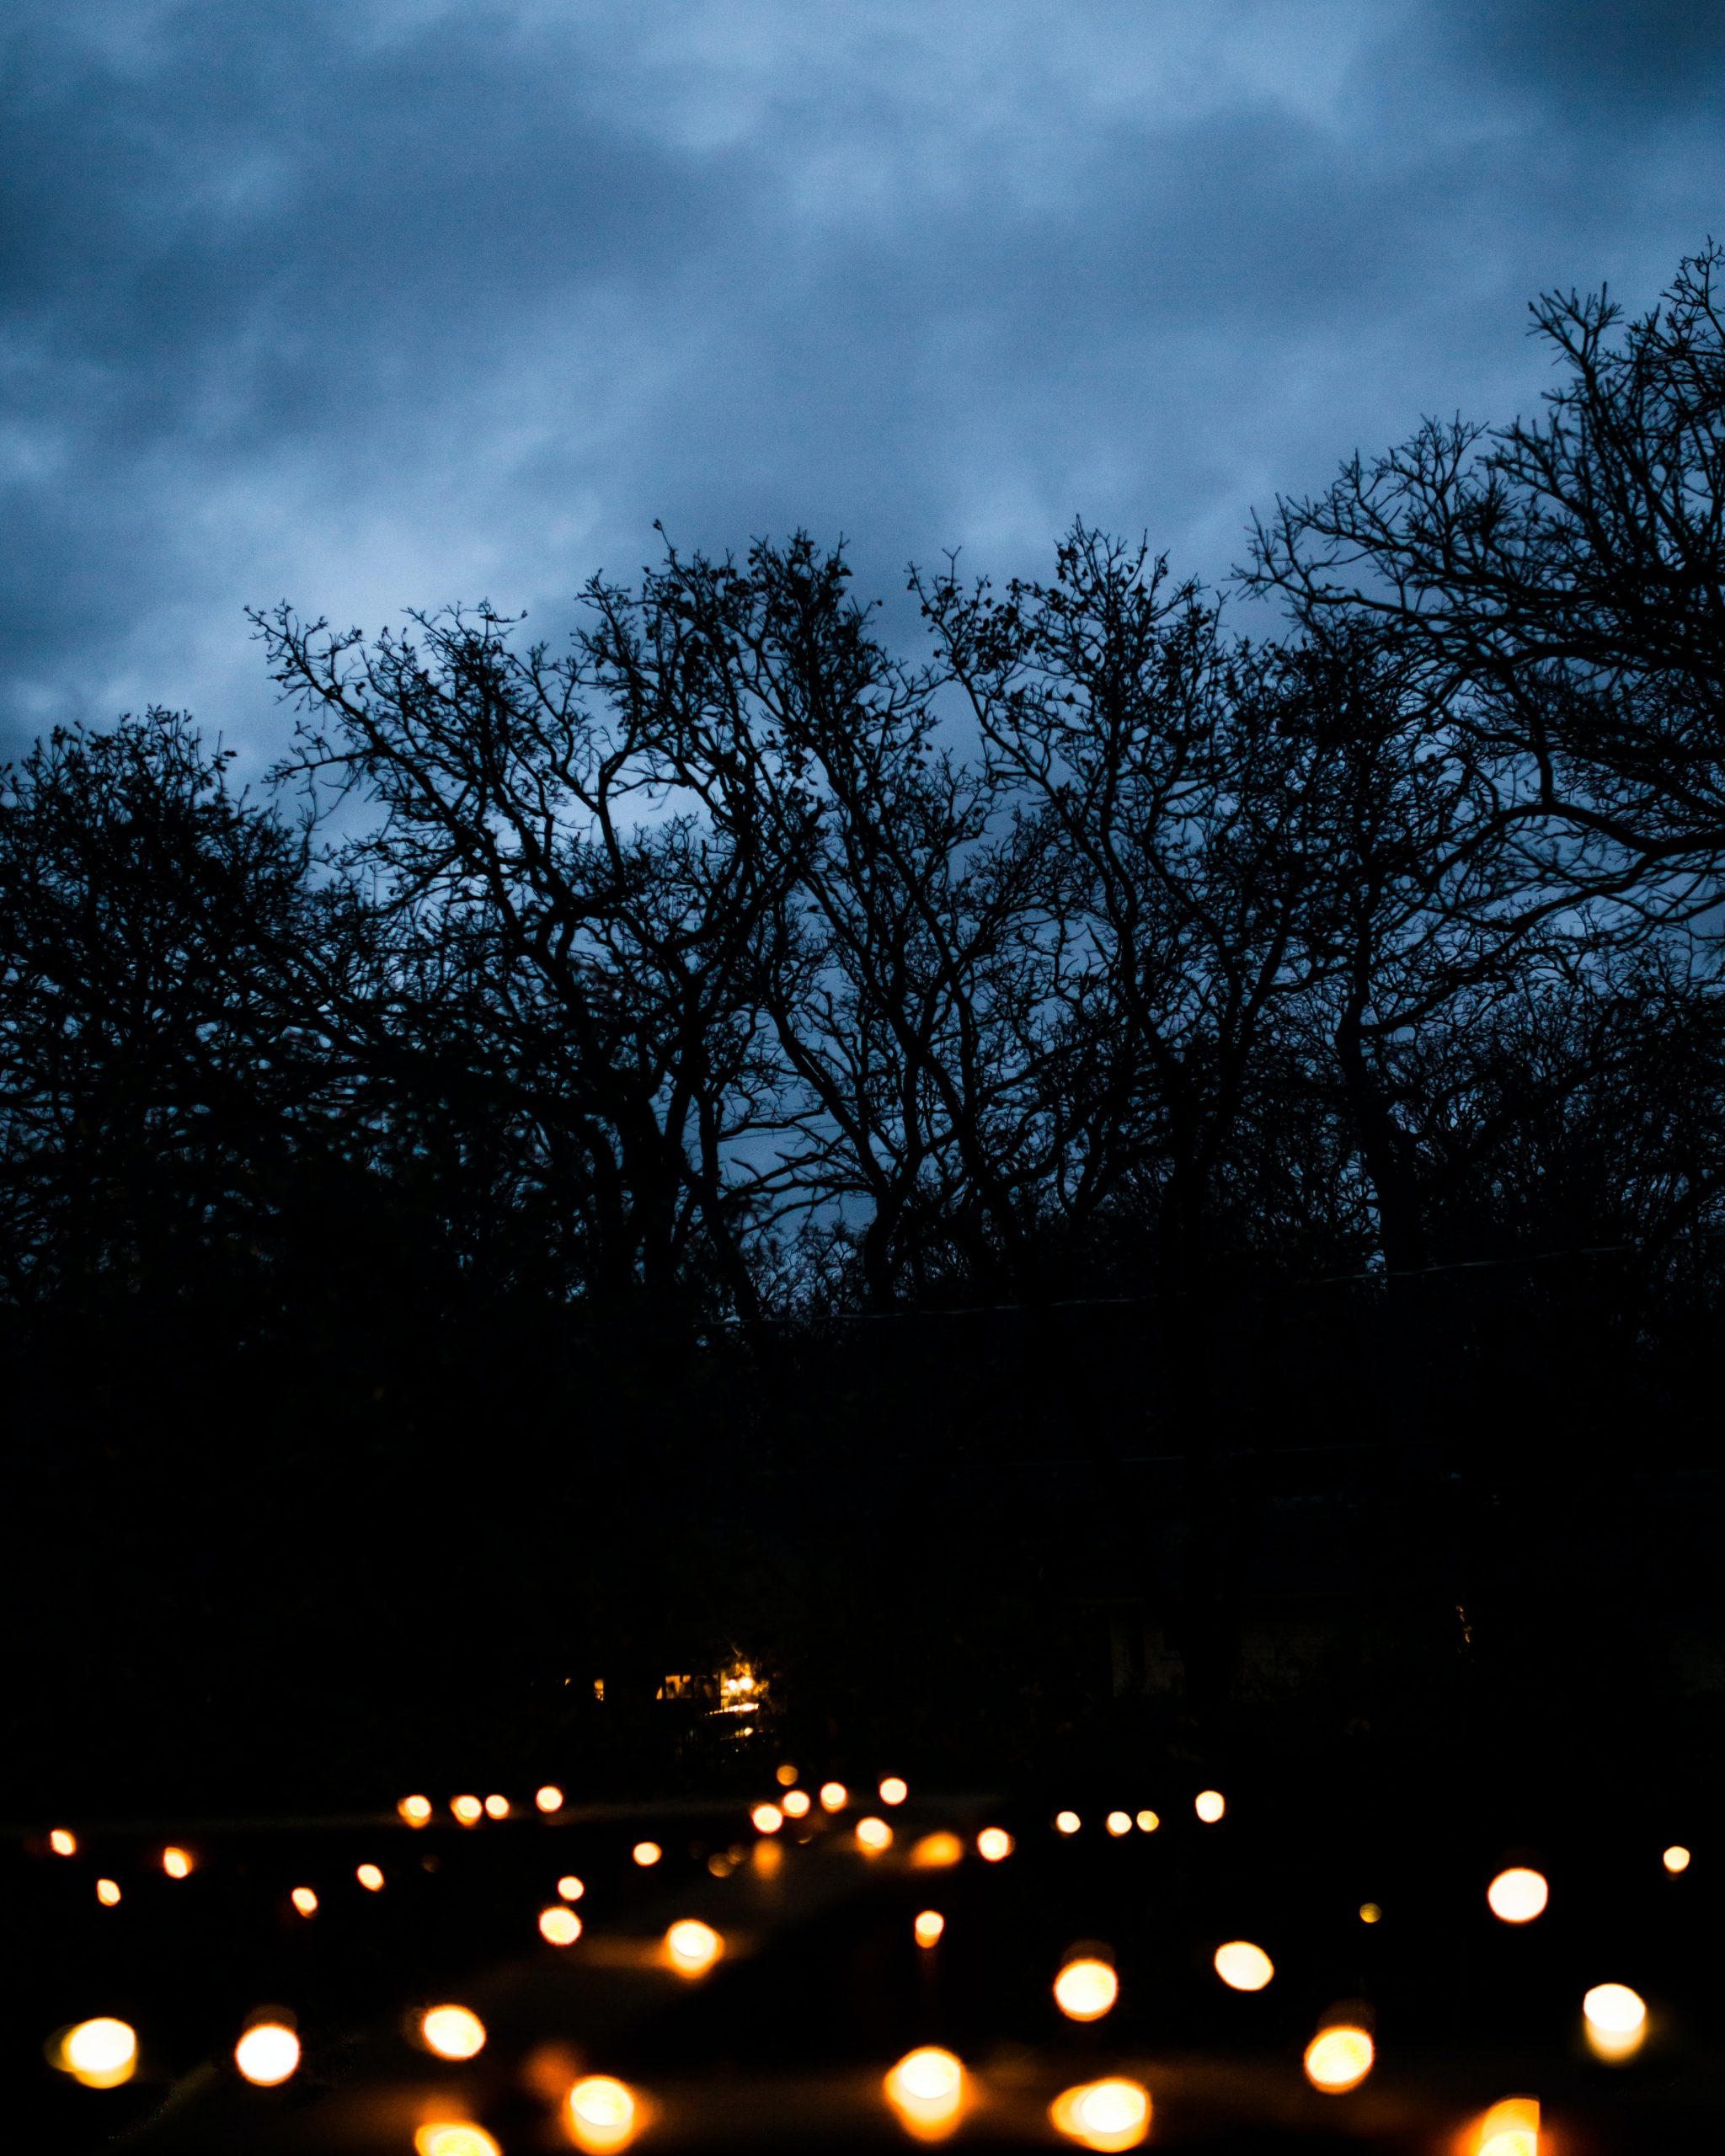 Photographie d'un étroit sentier menant à une forêt sombre, la nuit. Le chemin est bordé de bougies chauffe-plat scintillantes, et les arbres de la forêt se détachent sur un ciel sombre et nuageux.